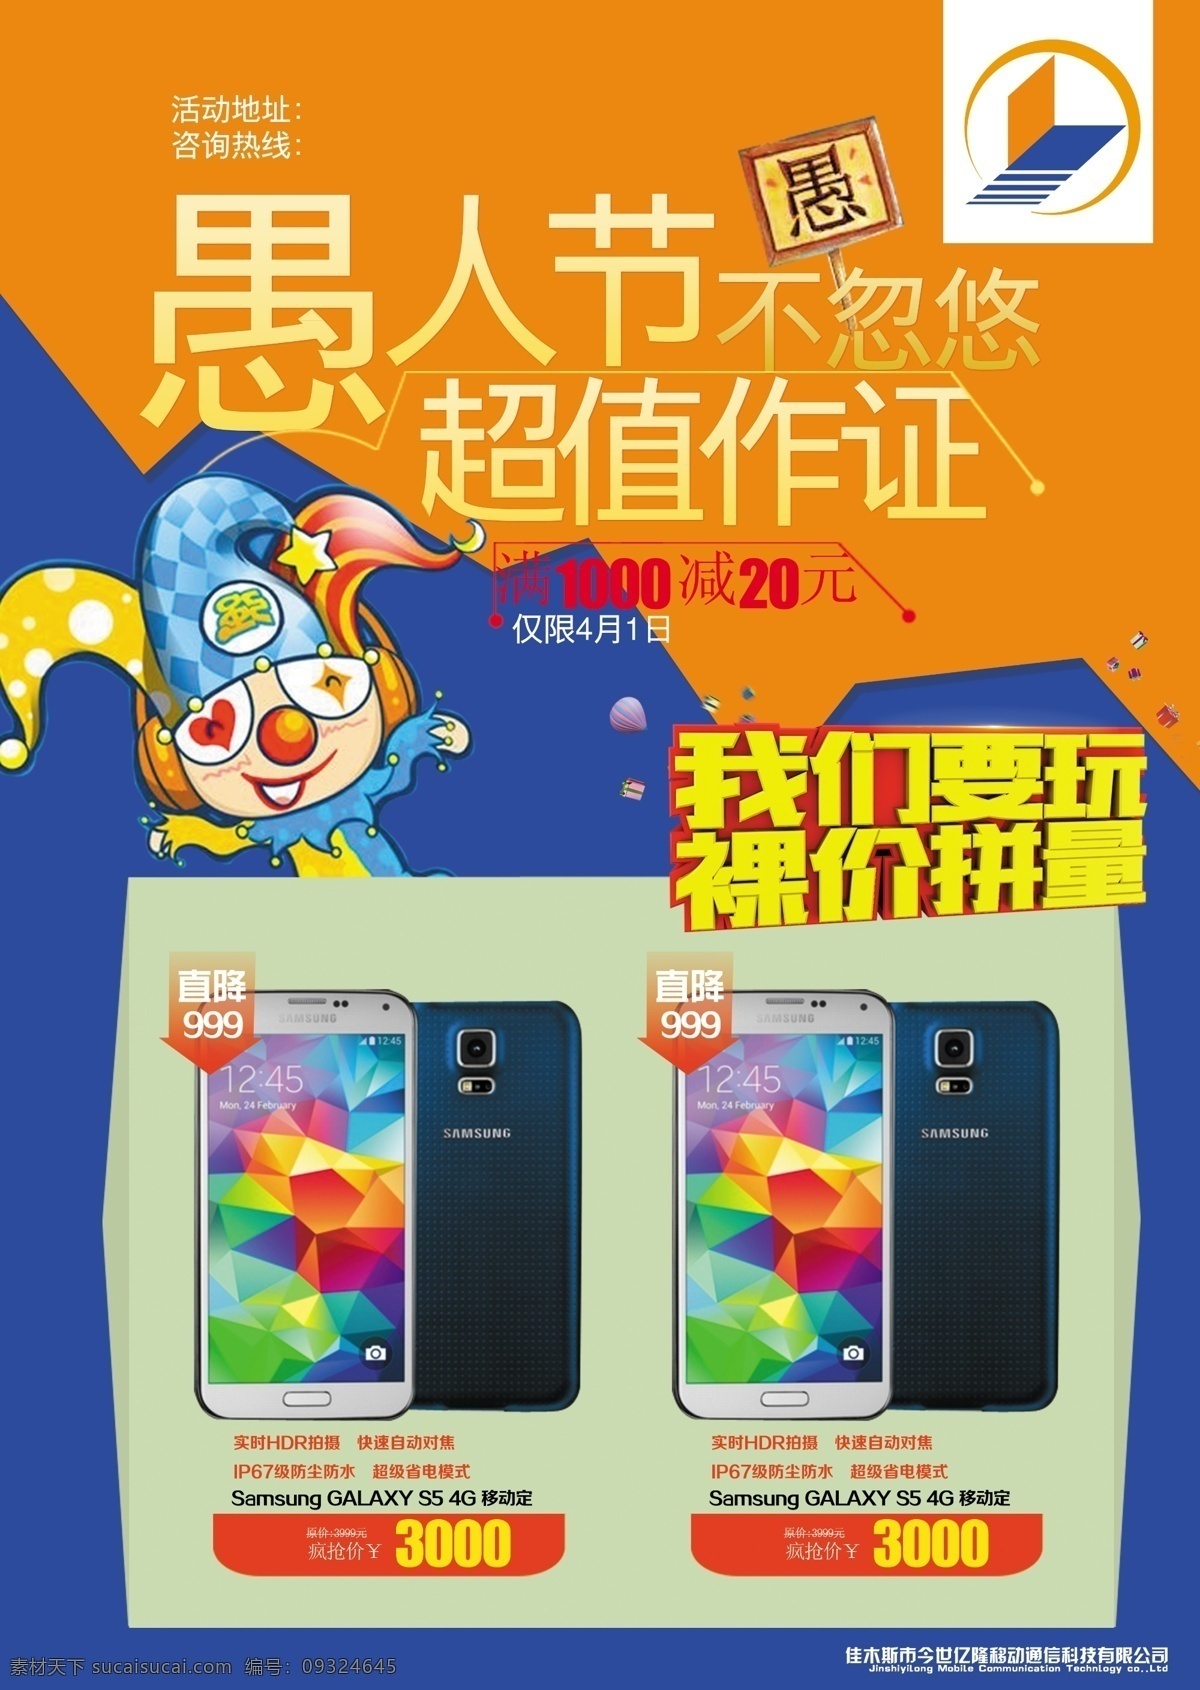 愚人节 宣传单 活动 手机 宣传 4月1日 各种节日 节日素材 其他节日